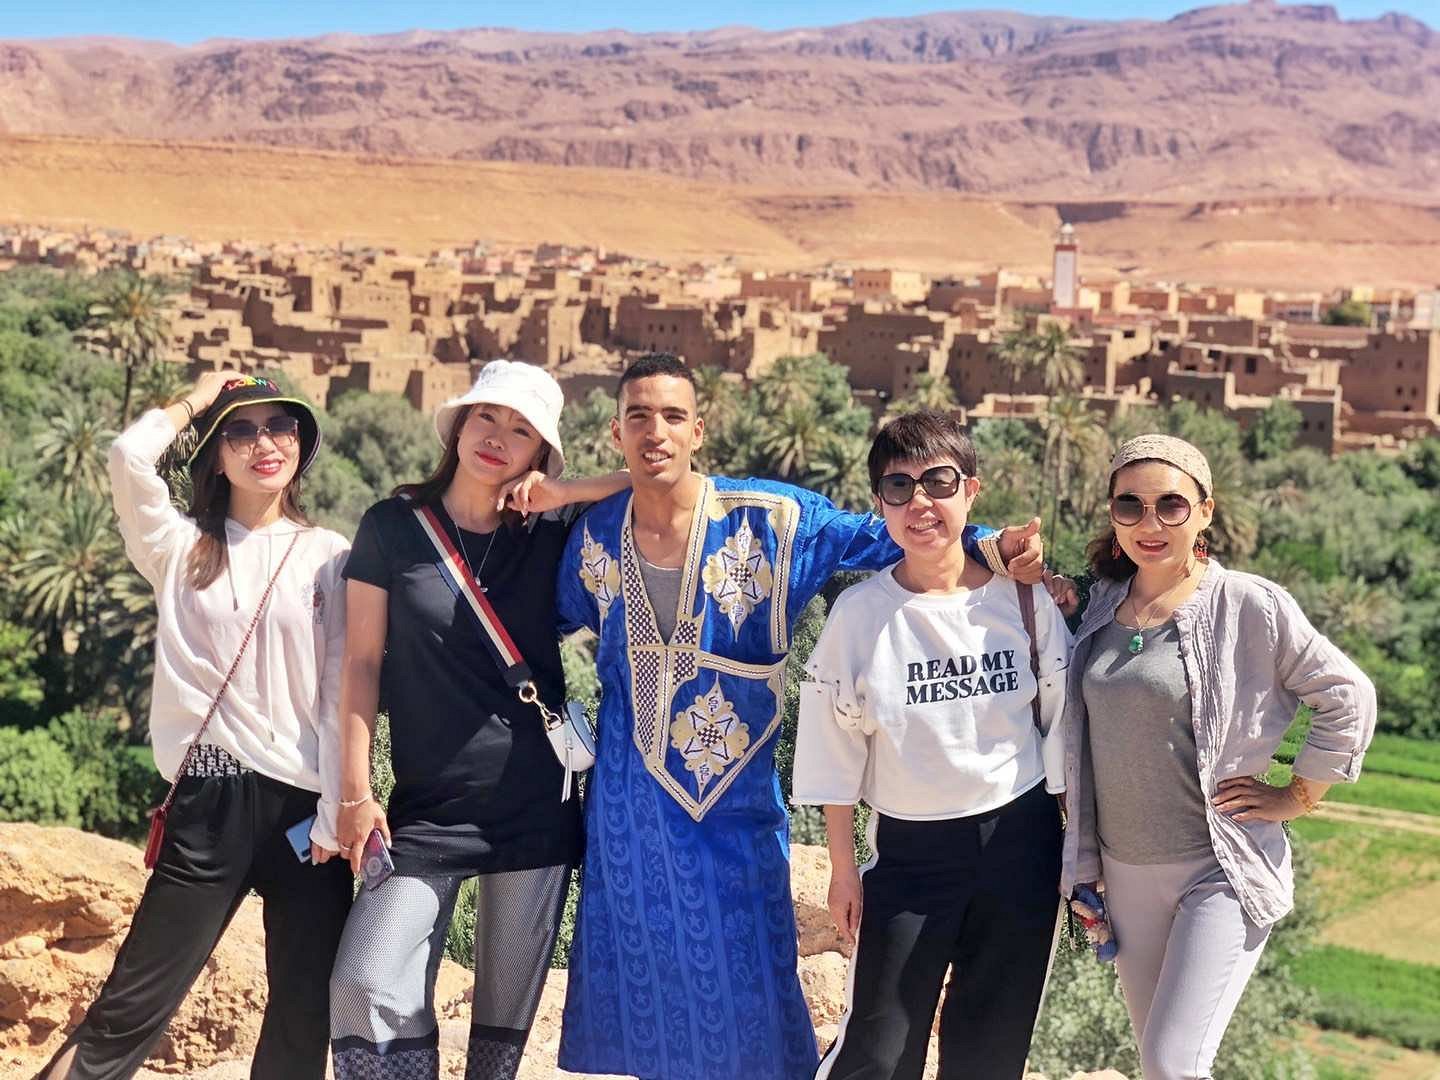 eco tourism morocco